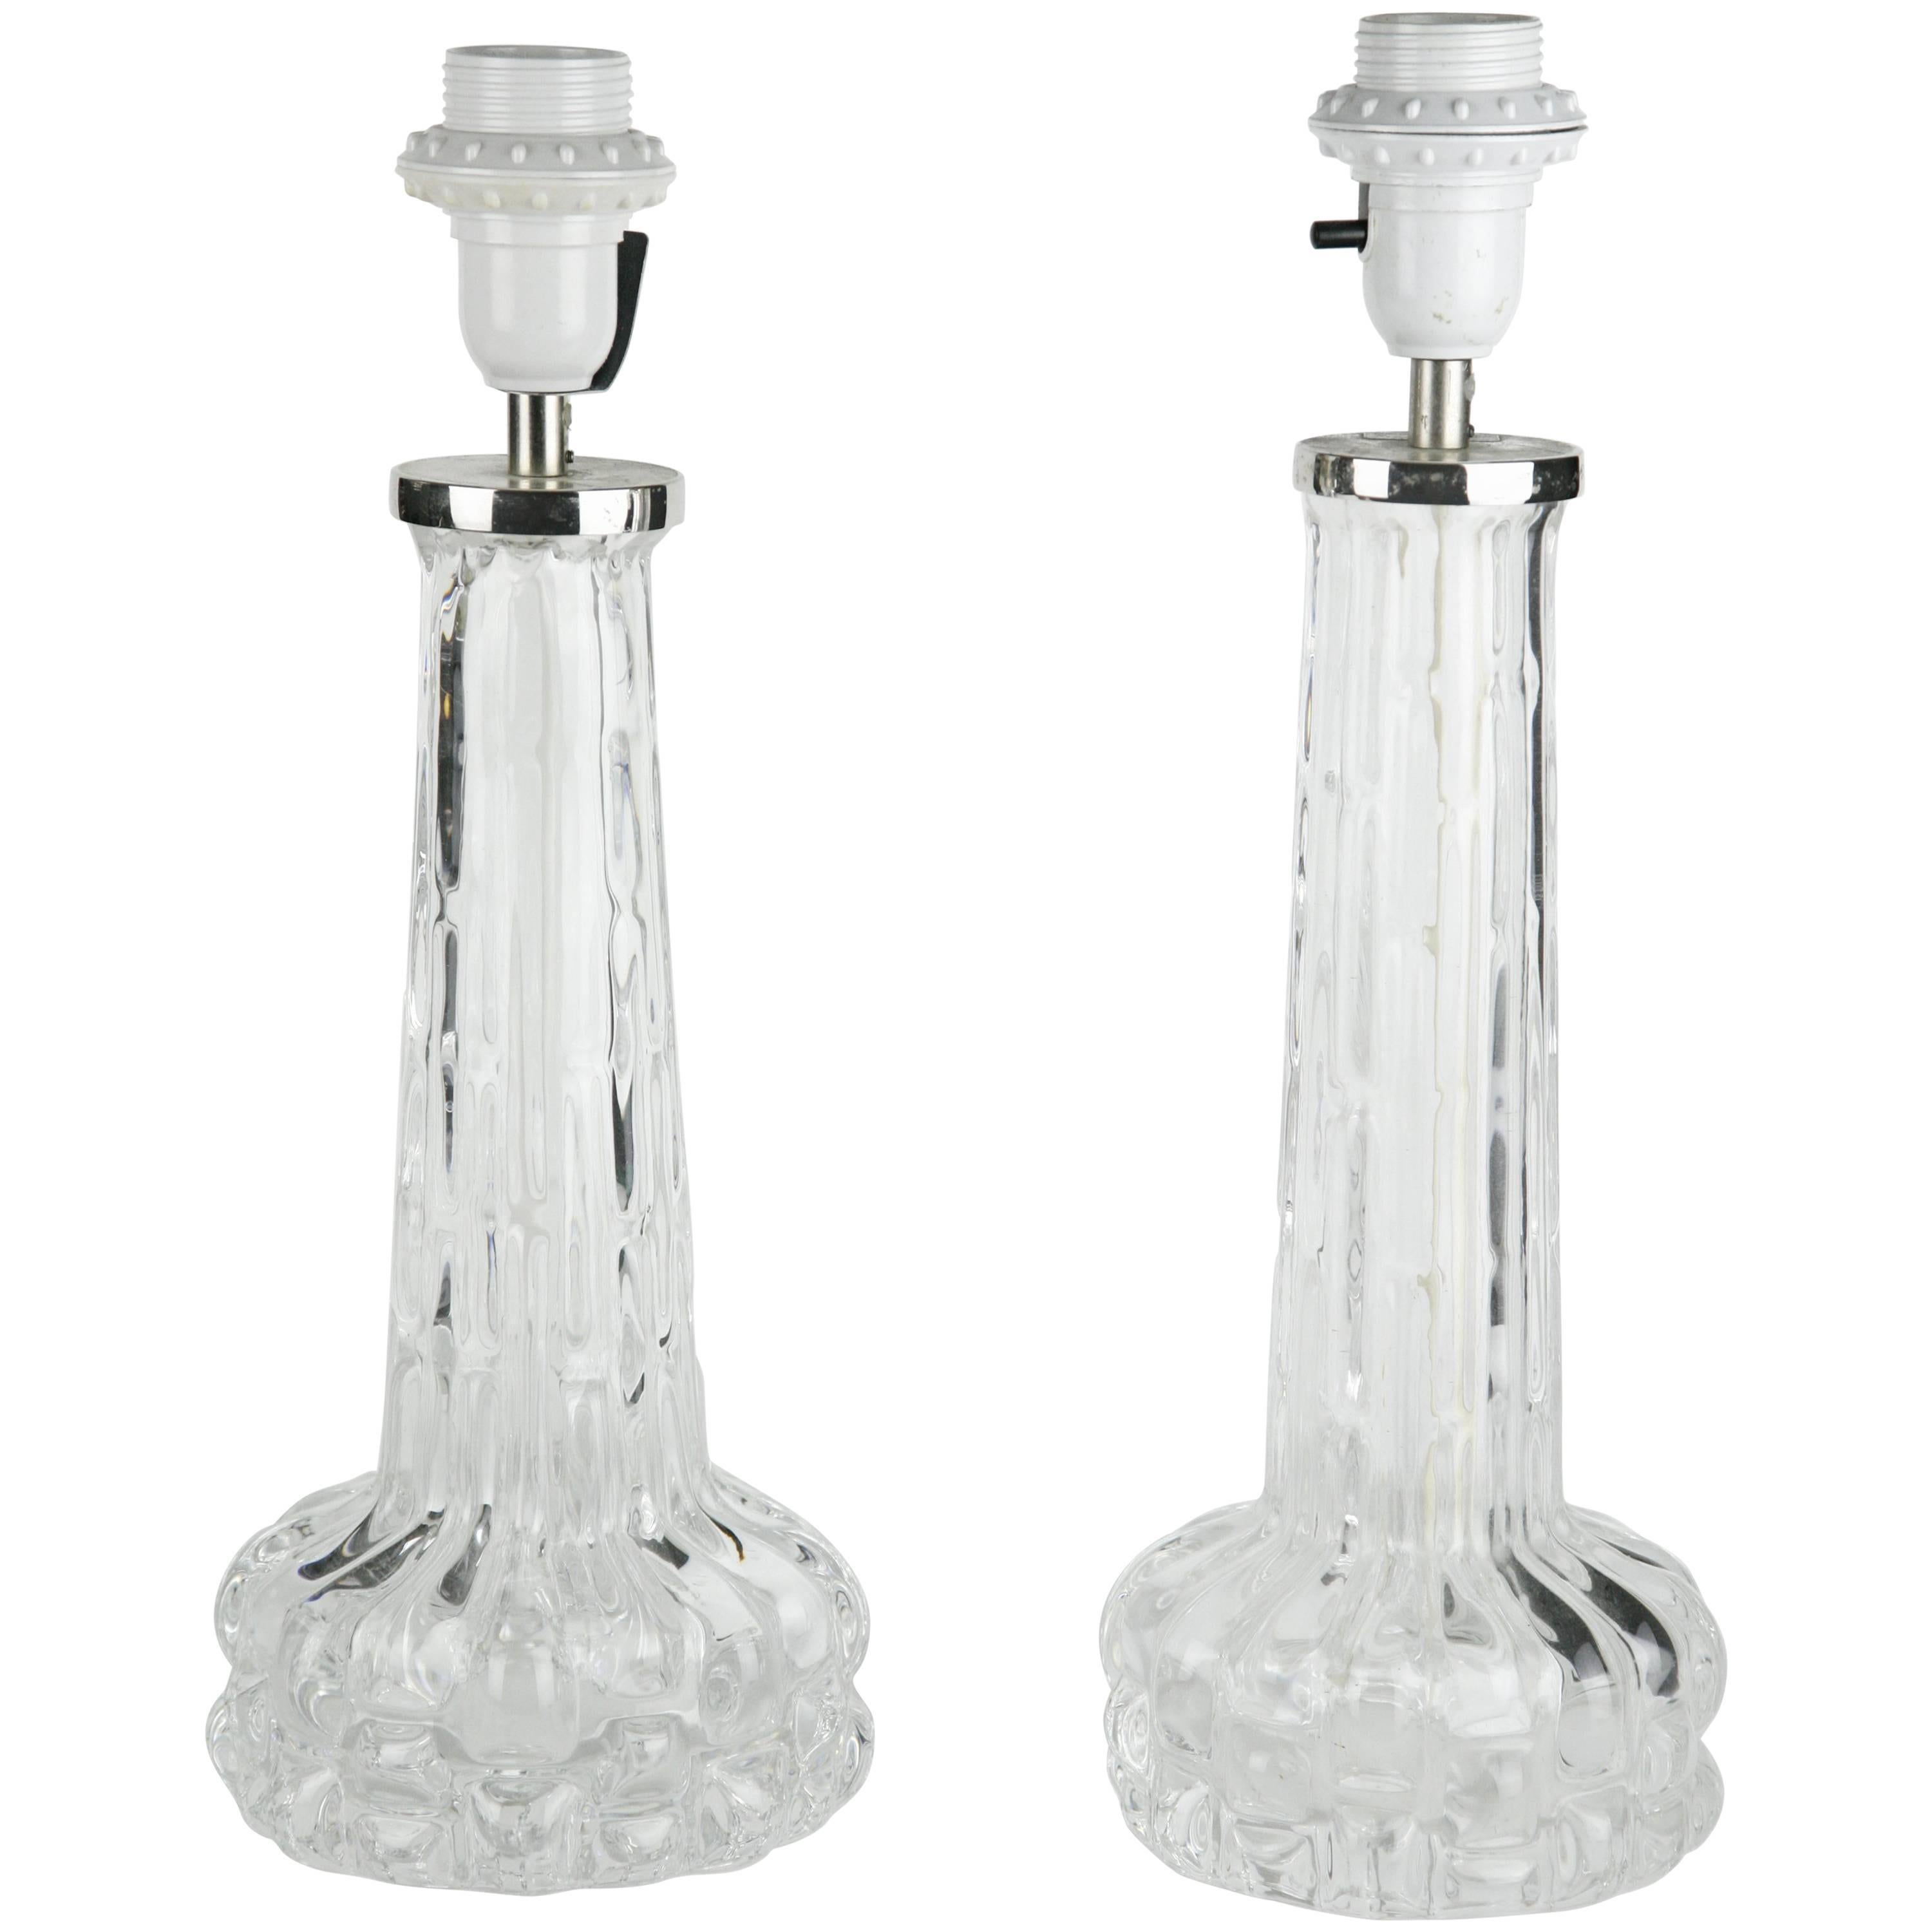 Lampes Orrefors en cristal clair avec accessoires chromés, motif de forme organique dans le verre, Suède 1970, signées Carl Fagerlund Orrefors.

 
  